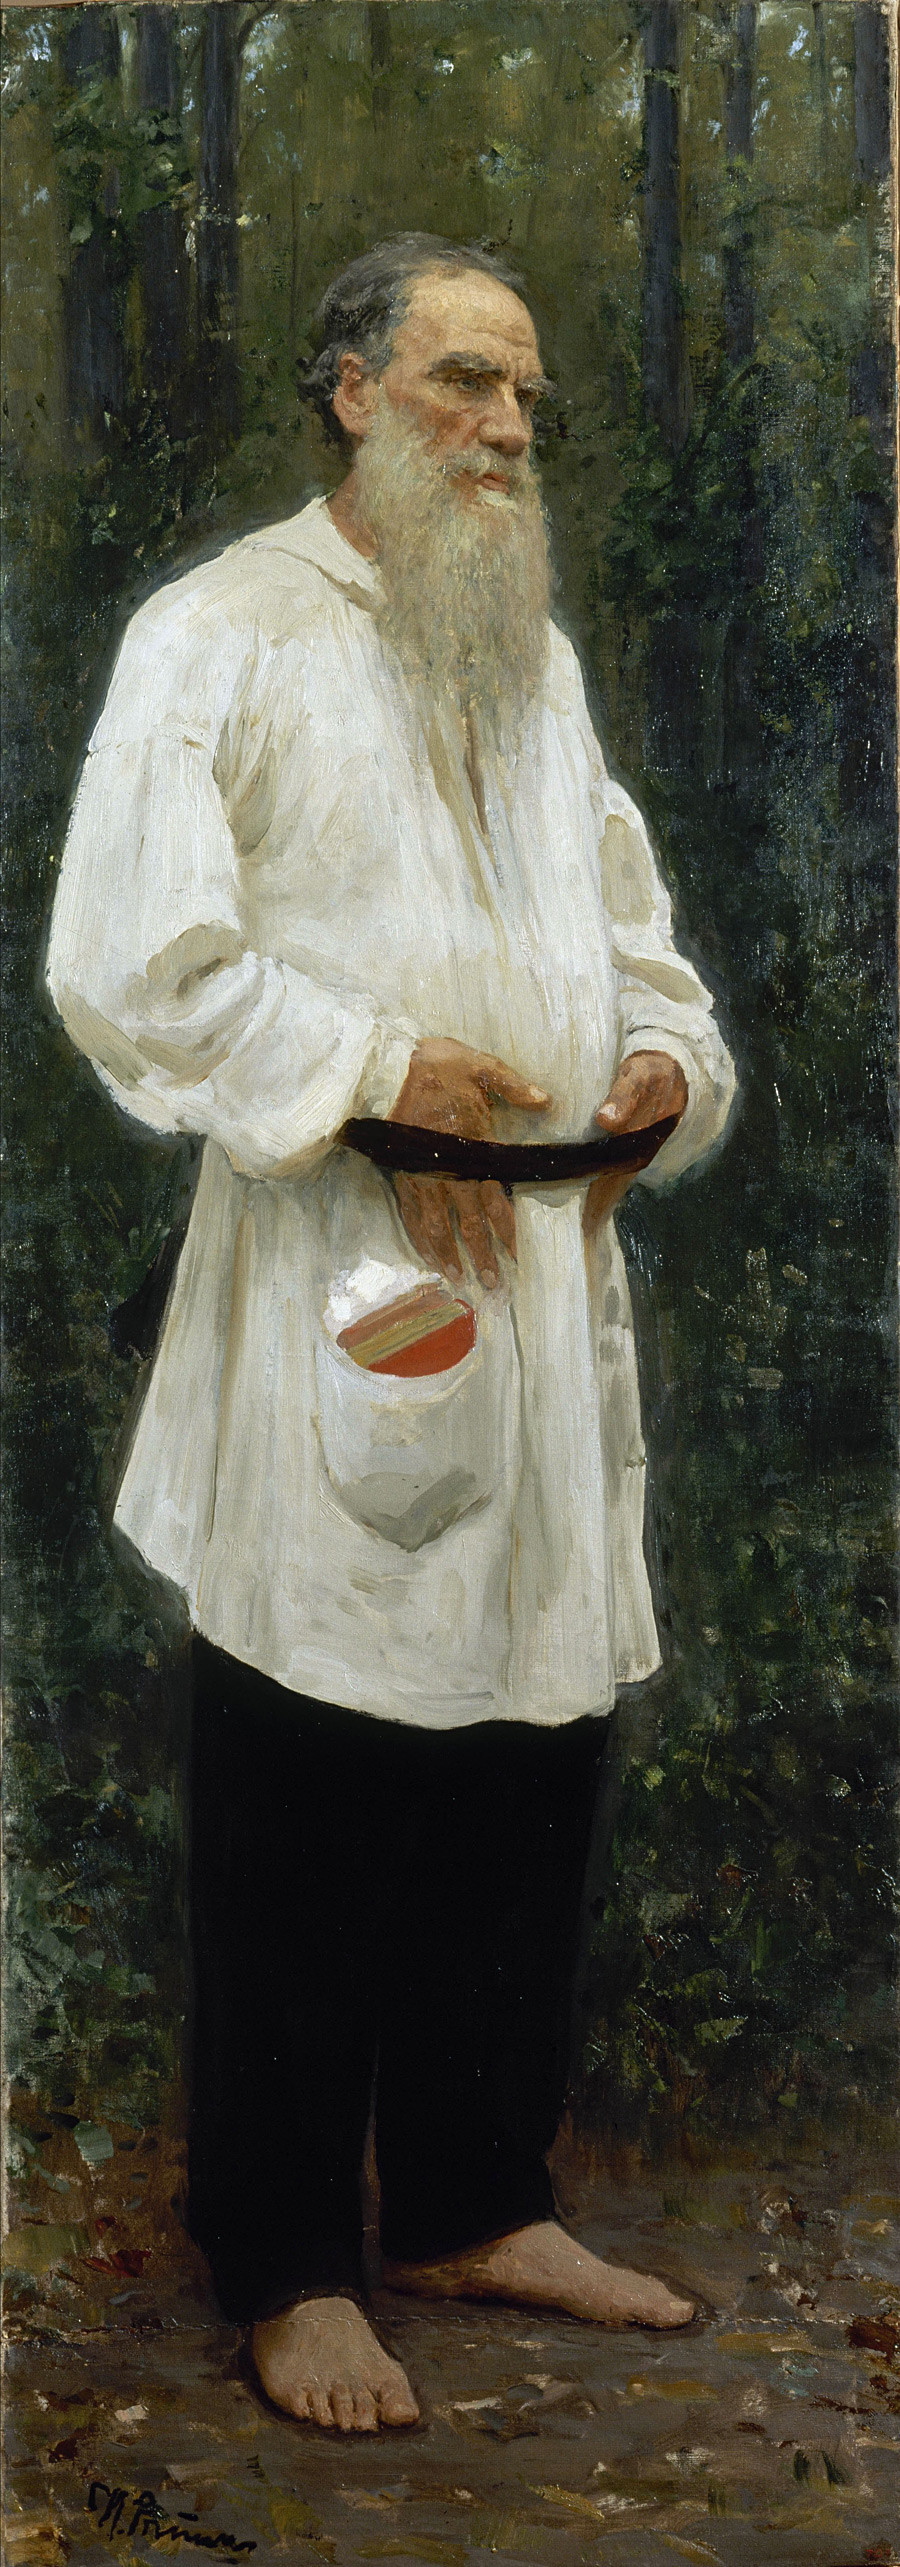 Leo Tolstoy Barefoot,1901